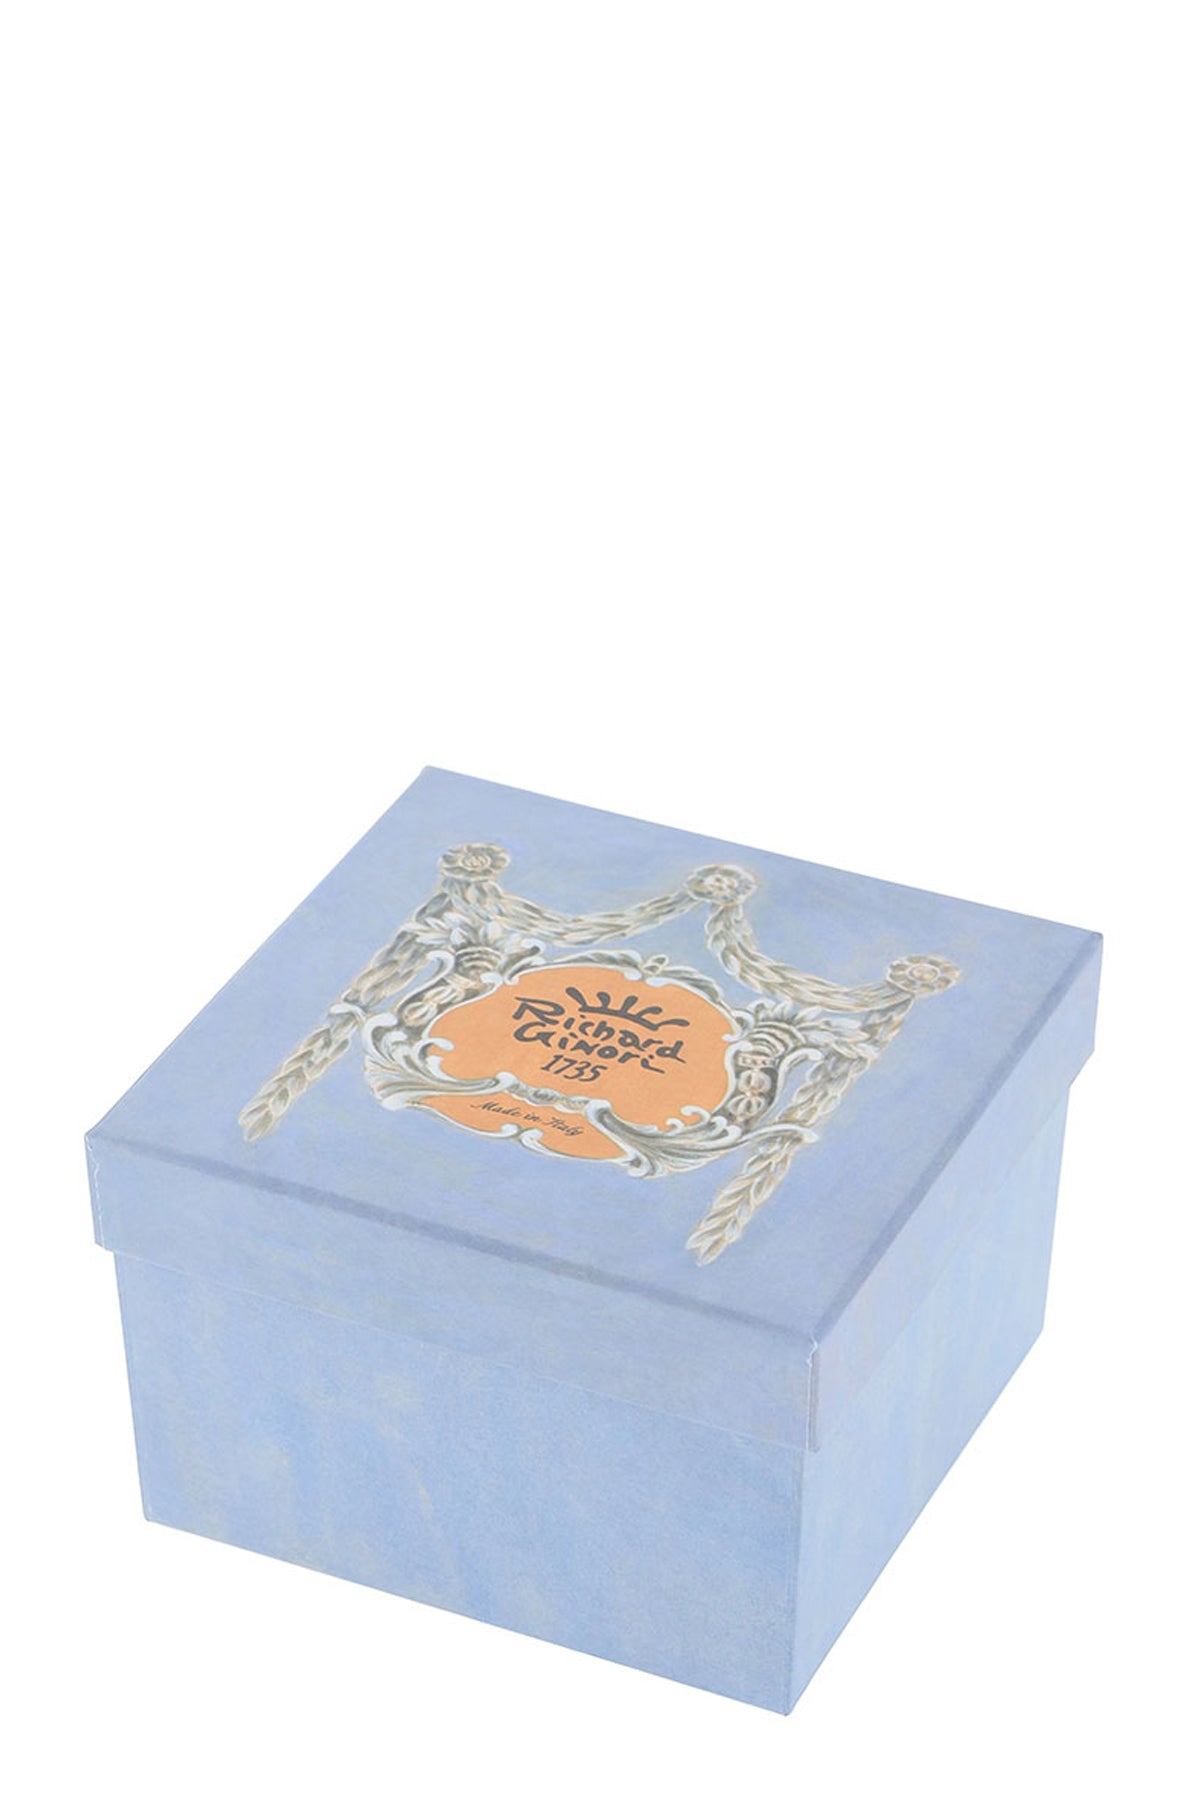 Ginori 1735 catene round box with cover-1